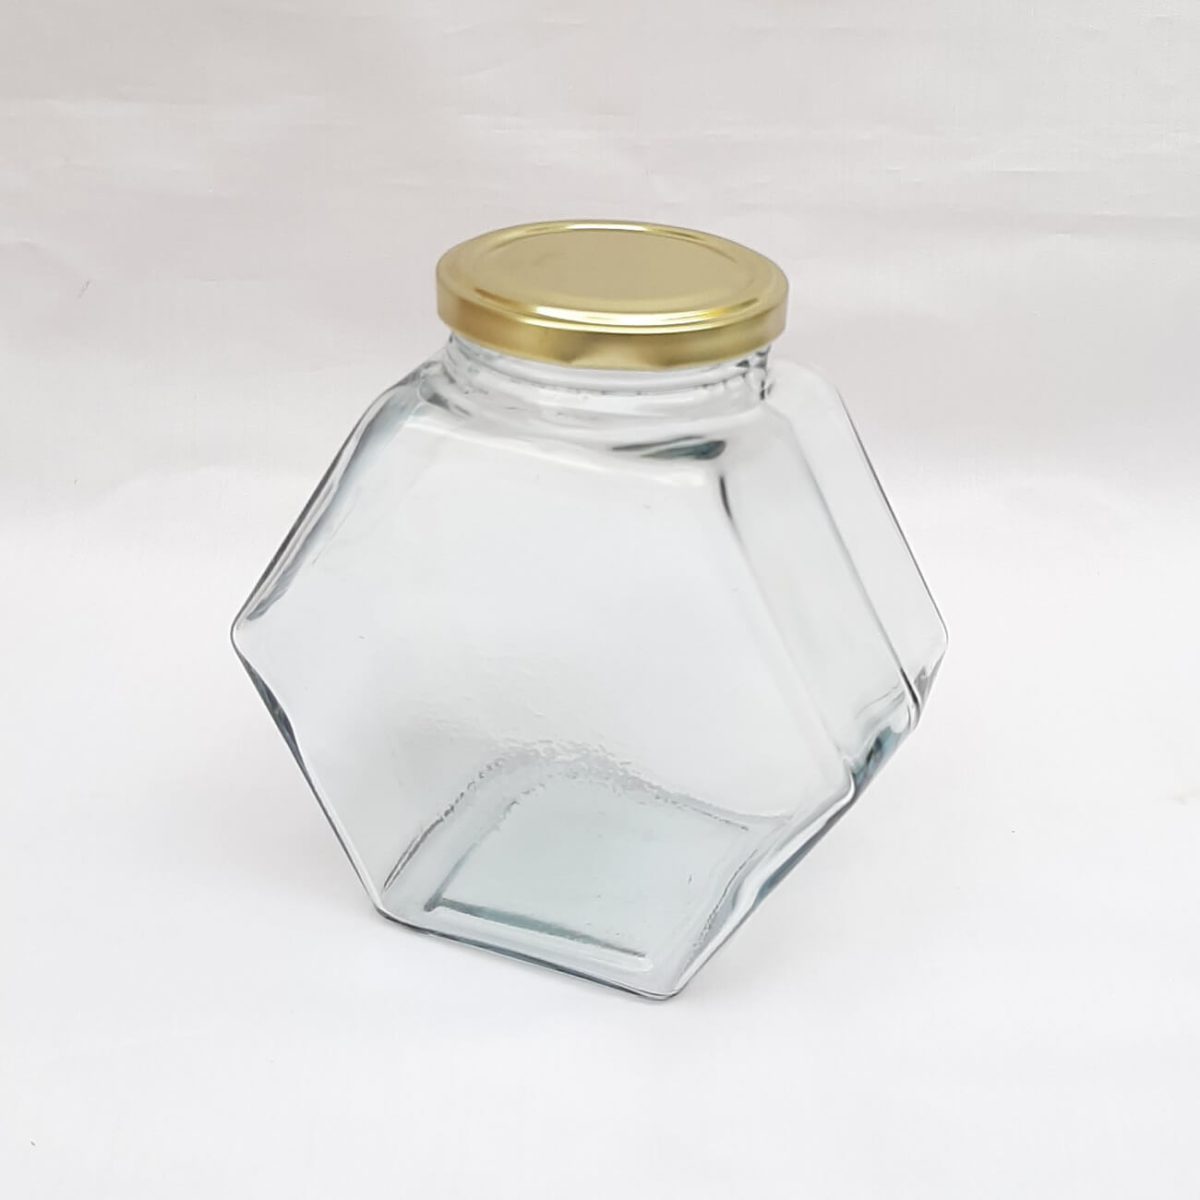 جار شیشه عسل یک کیلو کندو درب فلری